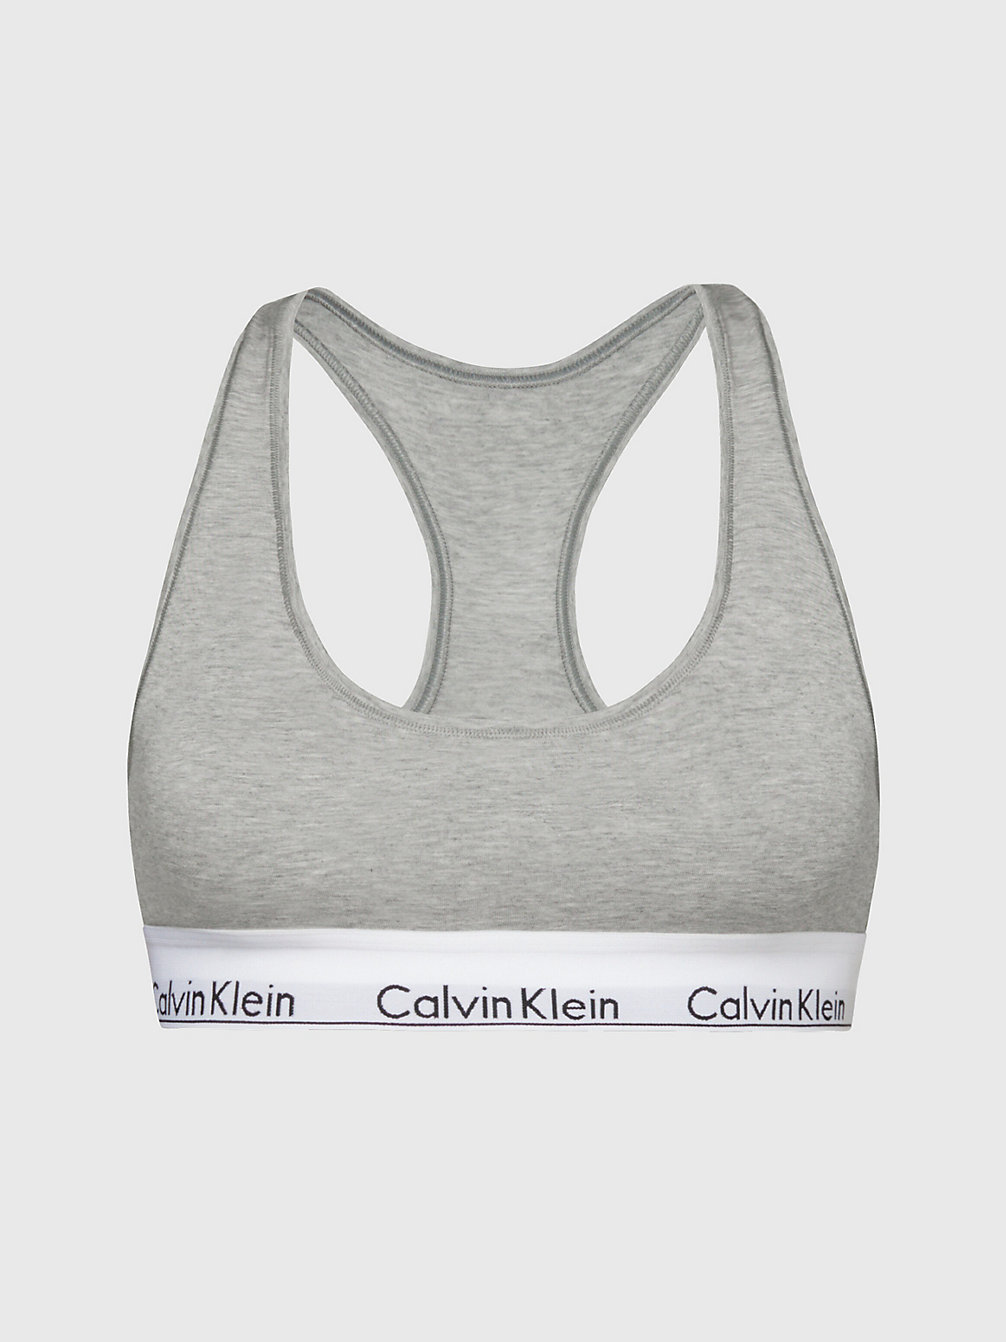 GREY HEATHER Bralette - Modern Cotton undefined Damen Calvin Klein